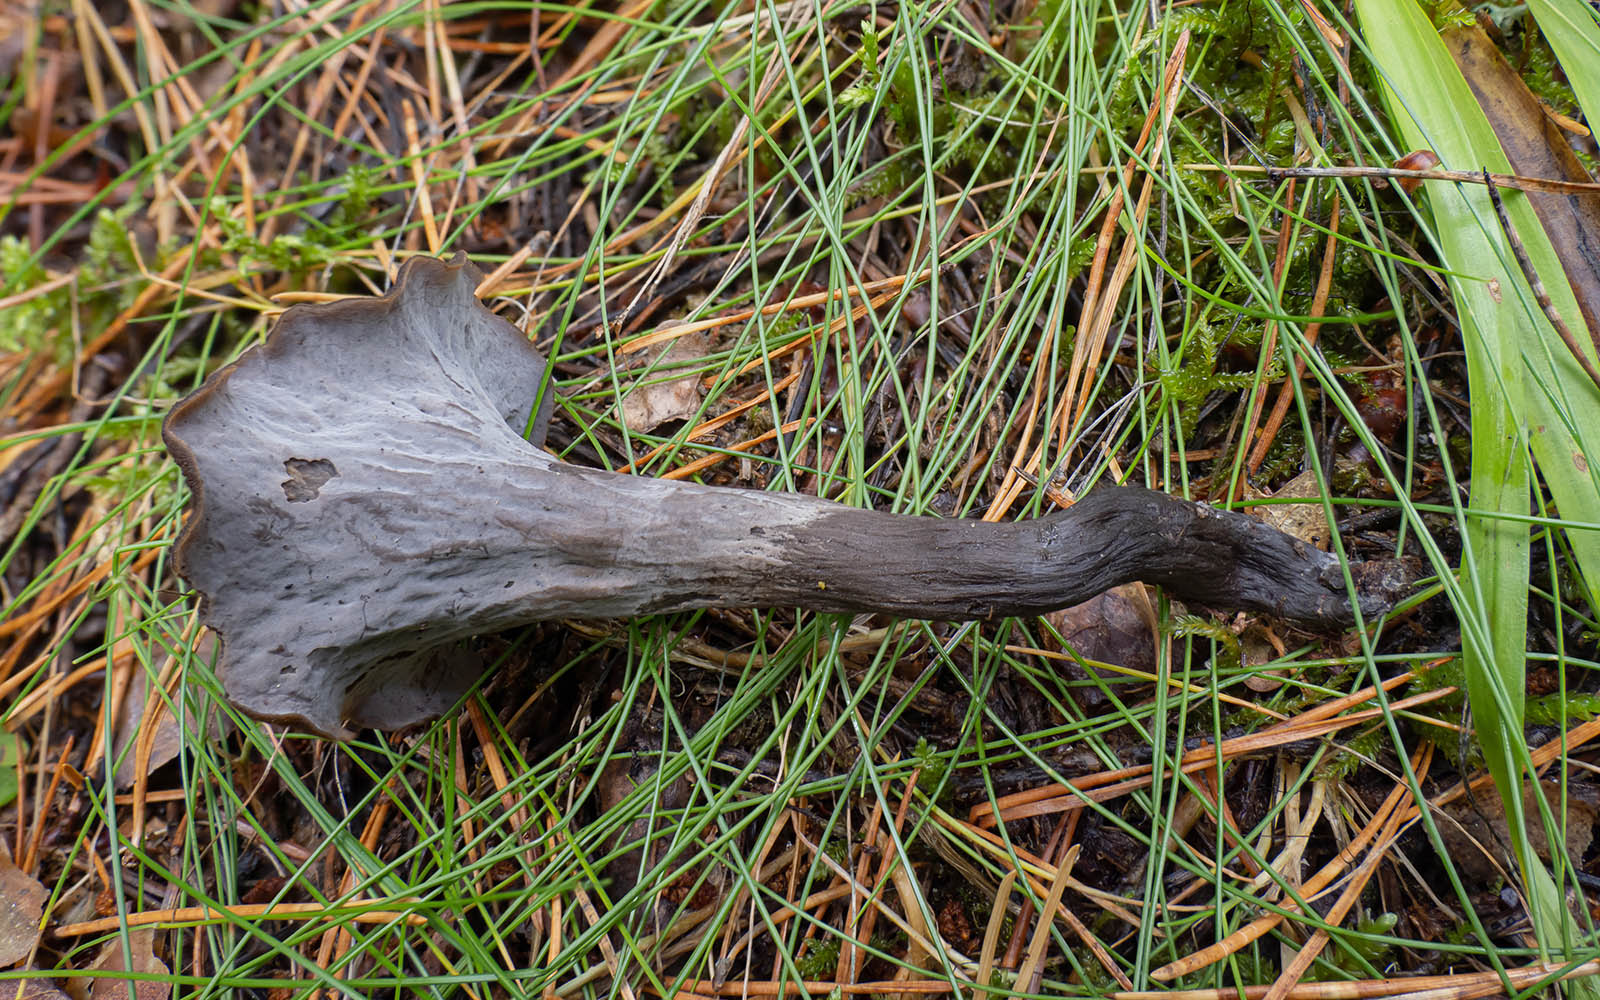 Вороночник рожковидный (Craterellus cornucopioides) в природном парке G?rv?ln, Стокгольм. Октябрь 2020 года. Автор фото: Сутормина Марина